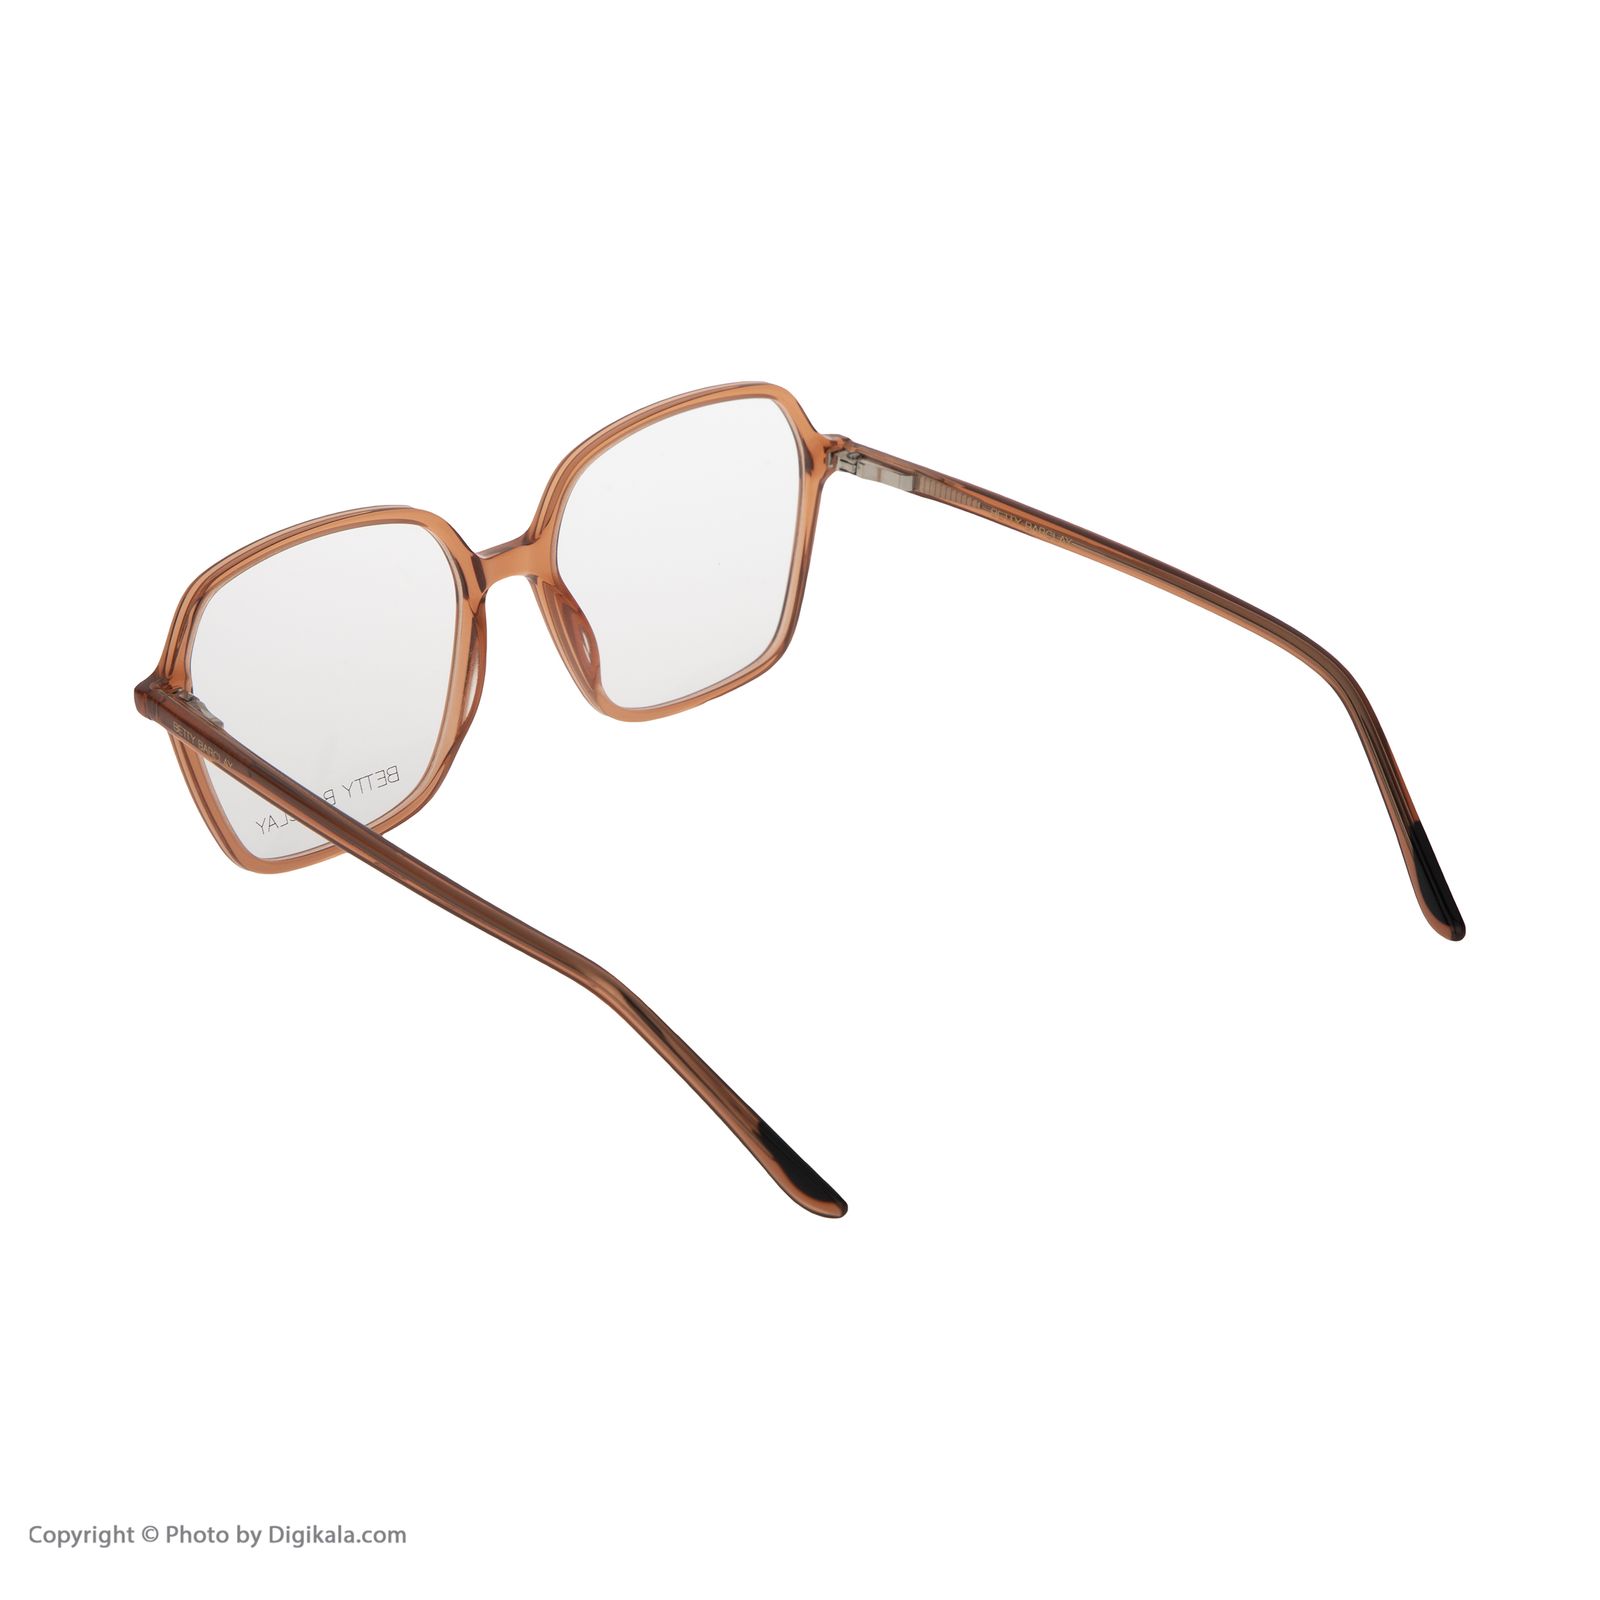 فریم عینک طبی زنانه بتی بارکلی مدل 51130-540 -  - 4